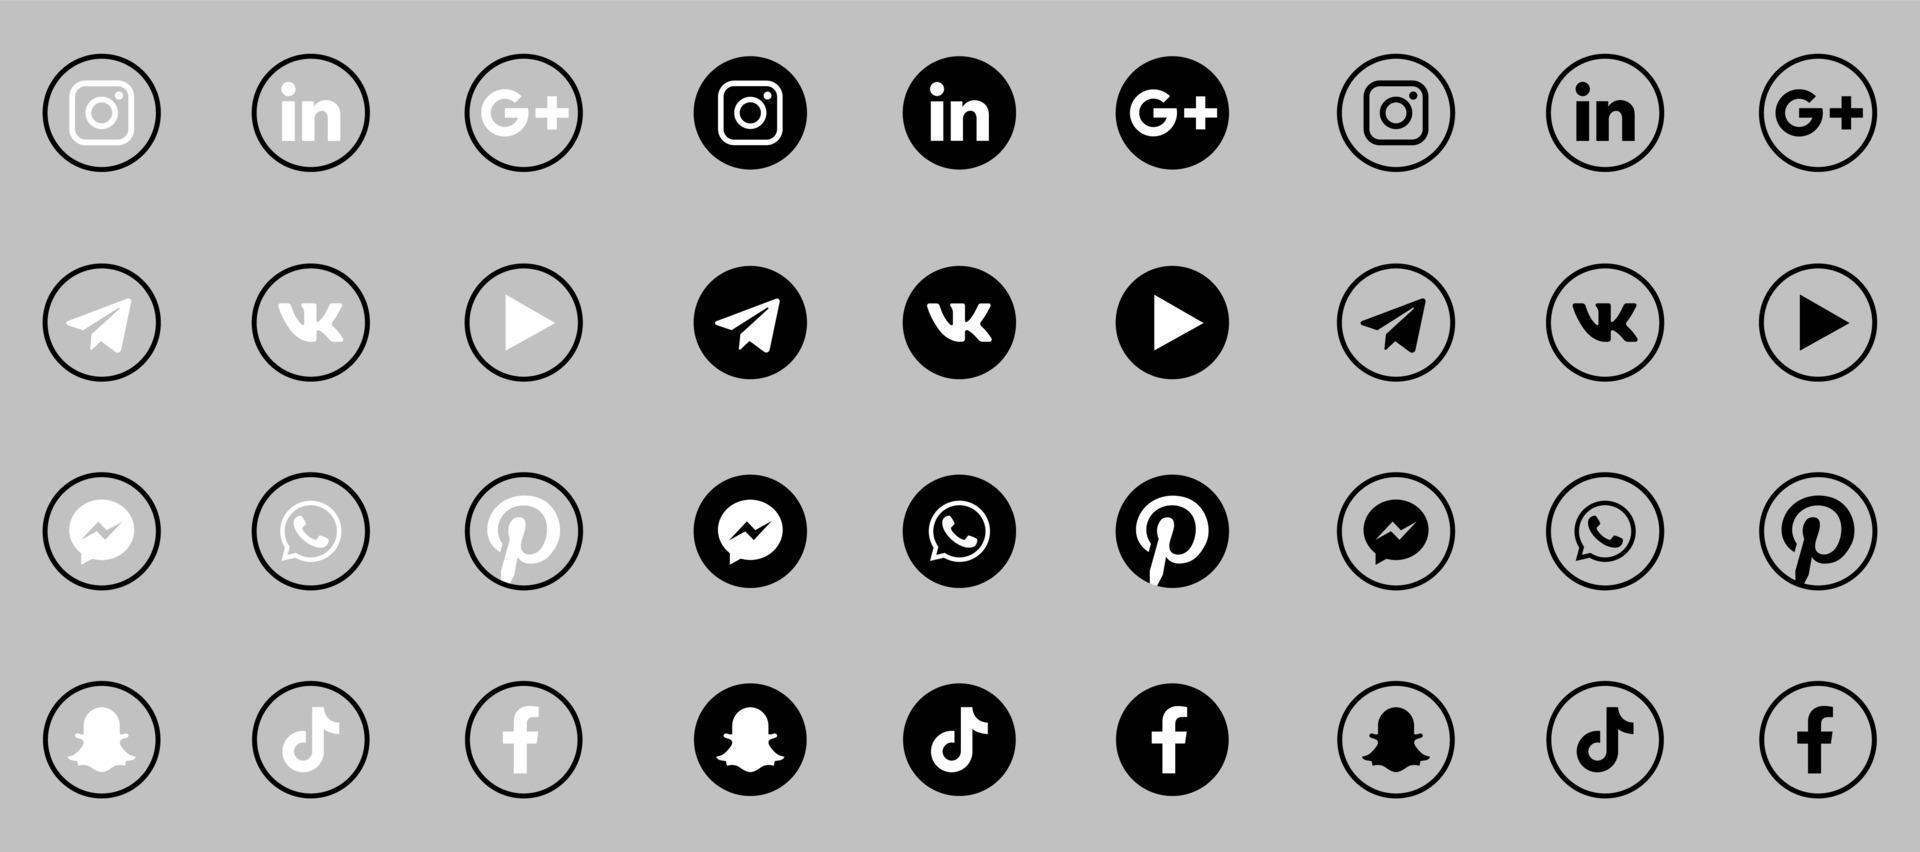 zwart-wit pictogrammen voor sociale media vector